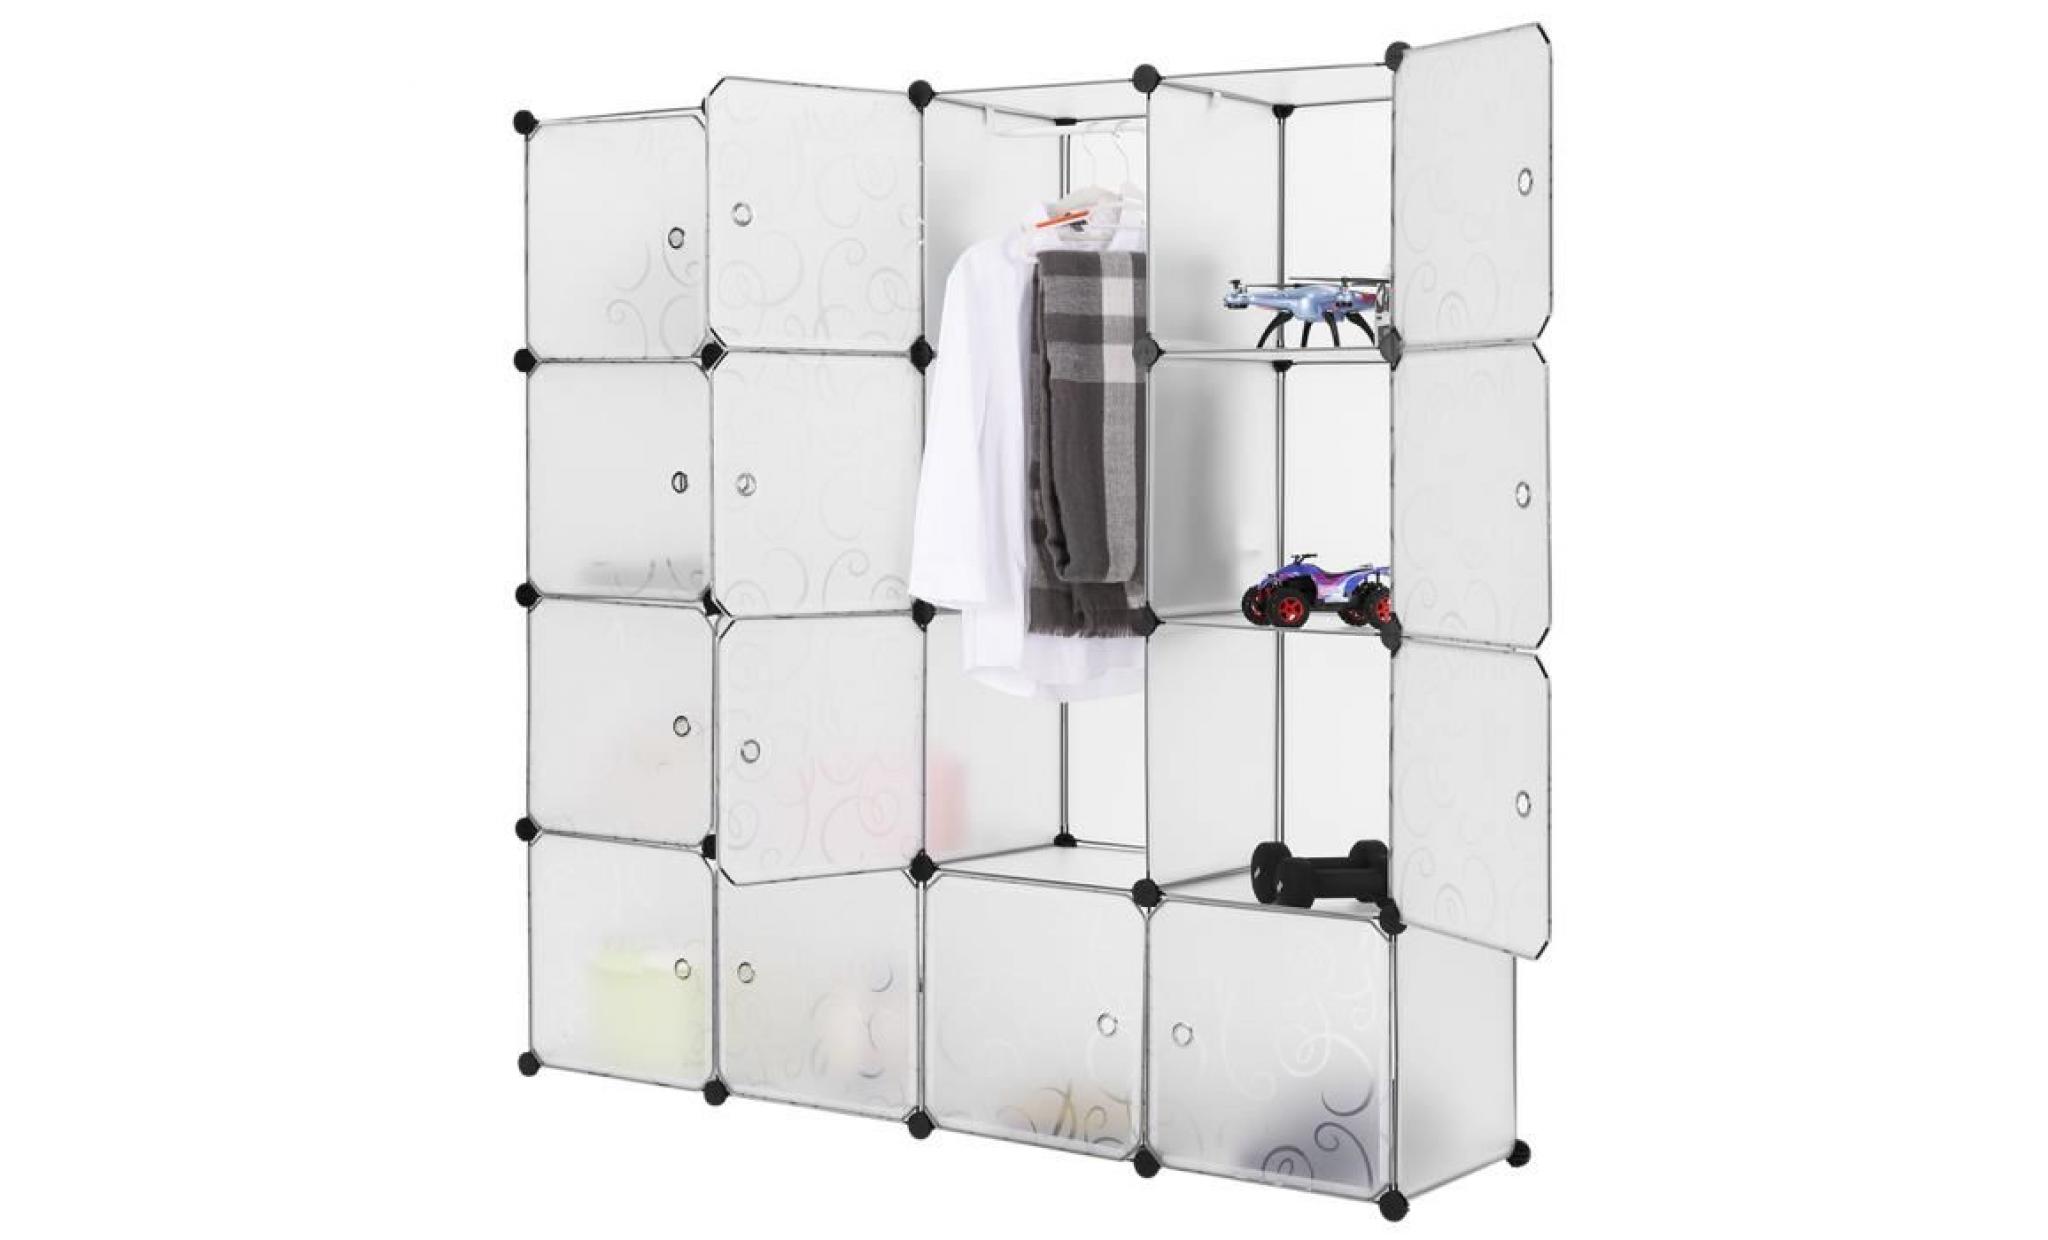 langria stockage armoire plastique 16 cubes translucide solidement Étagère meuble rangement chambre